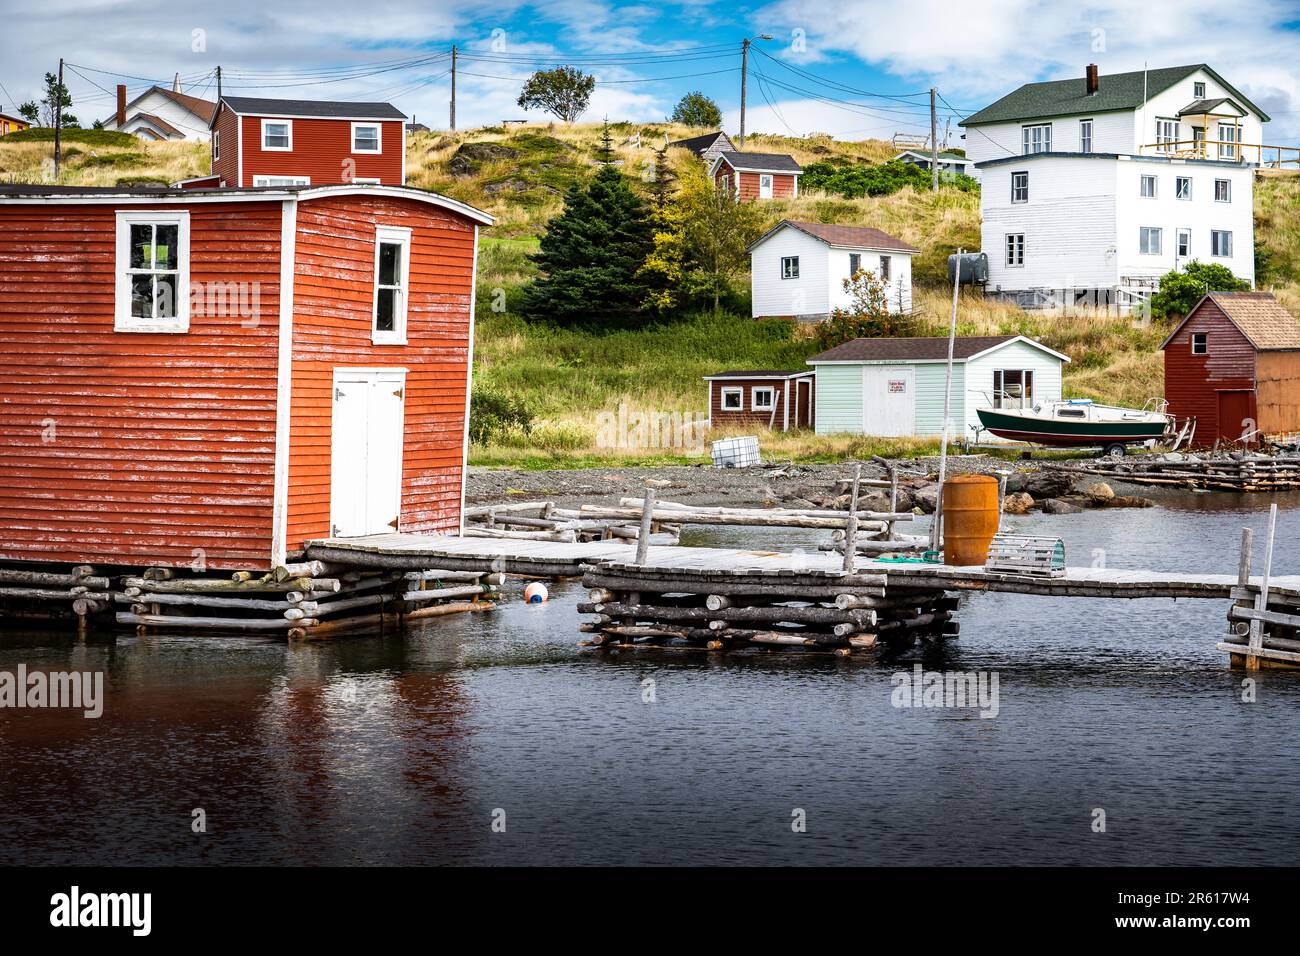 Les maisons de la côte est et les cabanes de pêche sur les vieux quais en bois surplombant la baie Trinity près de Port Union Terre-Neuve-et-Labrador Canada. Banque D'Images